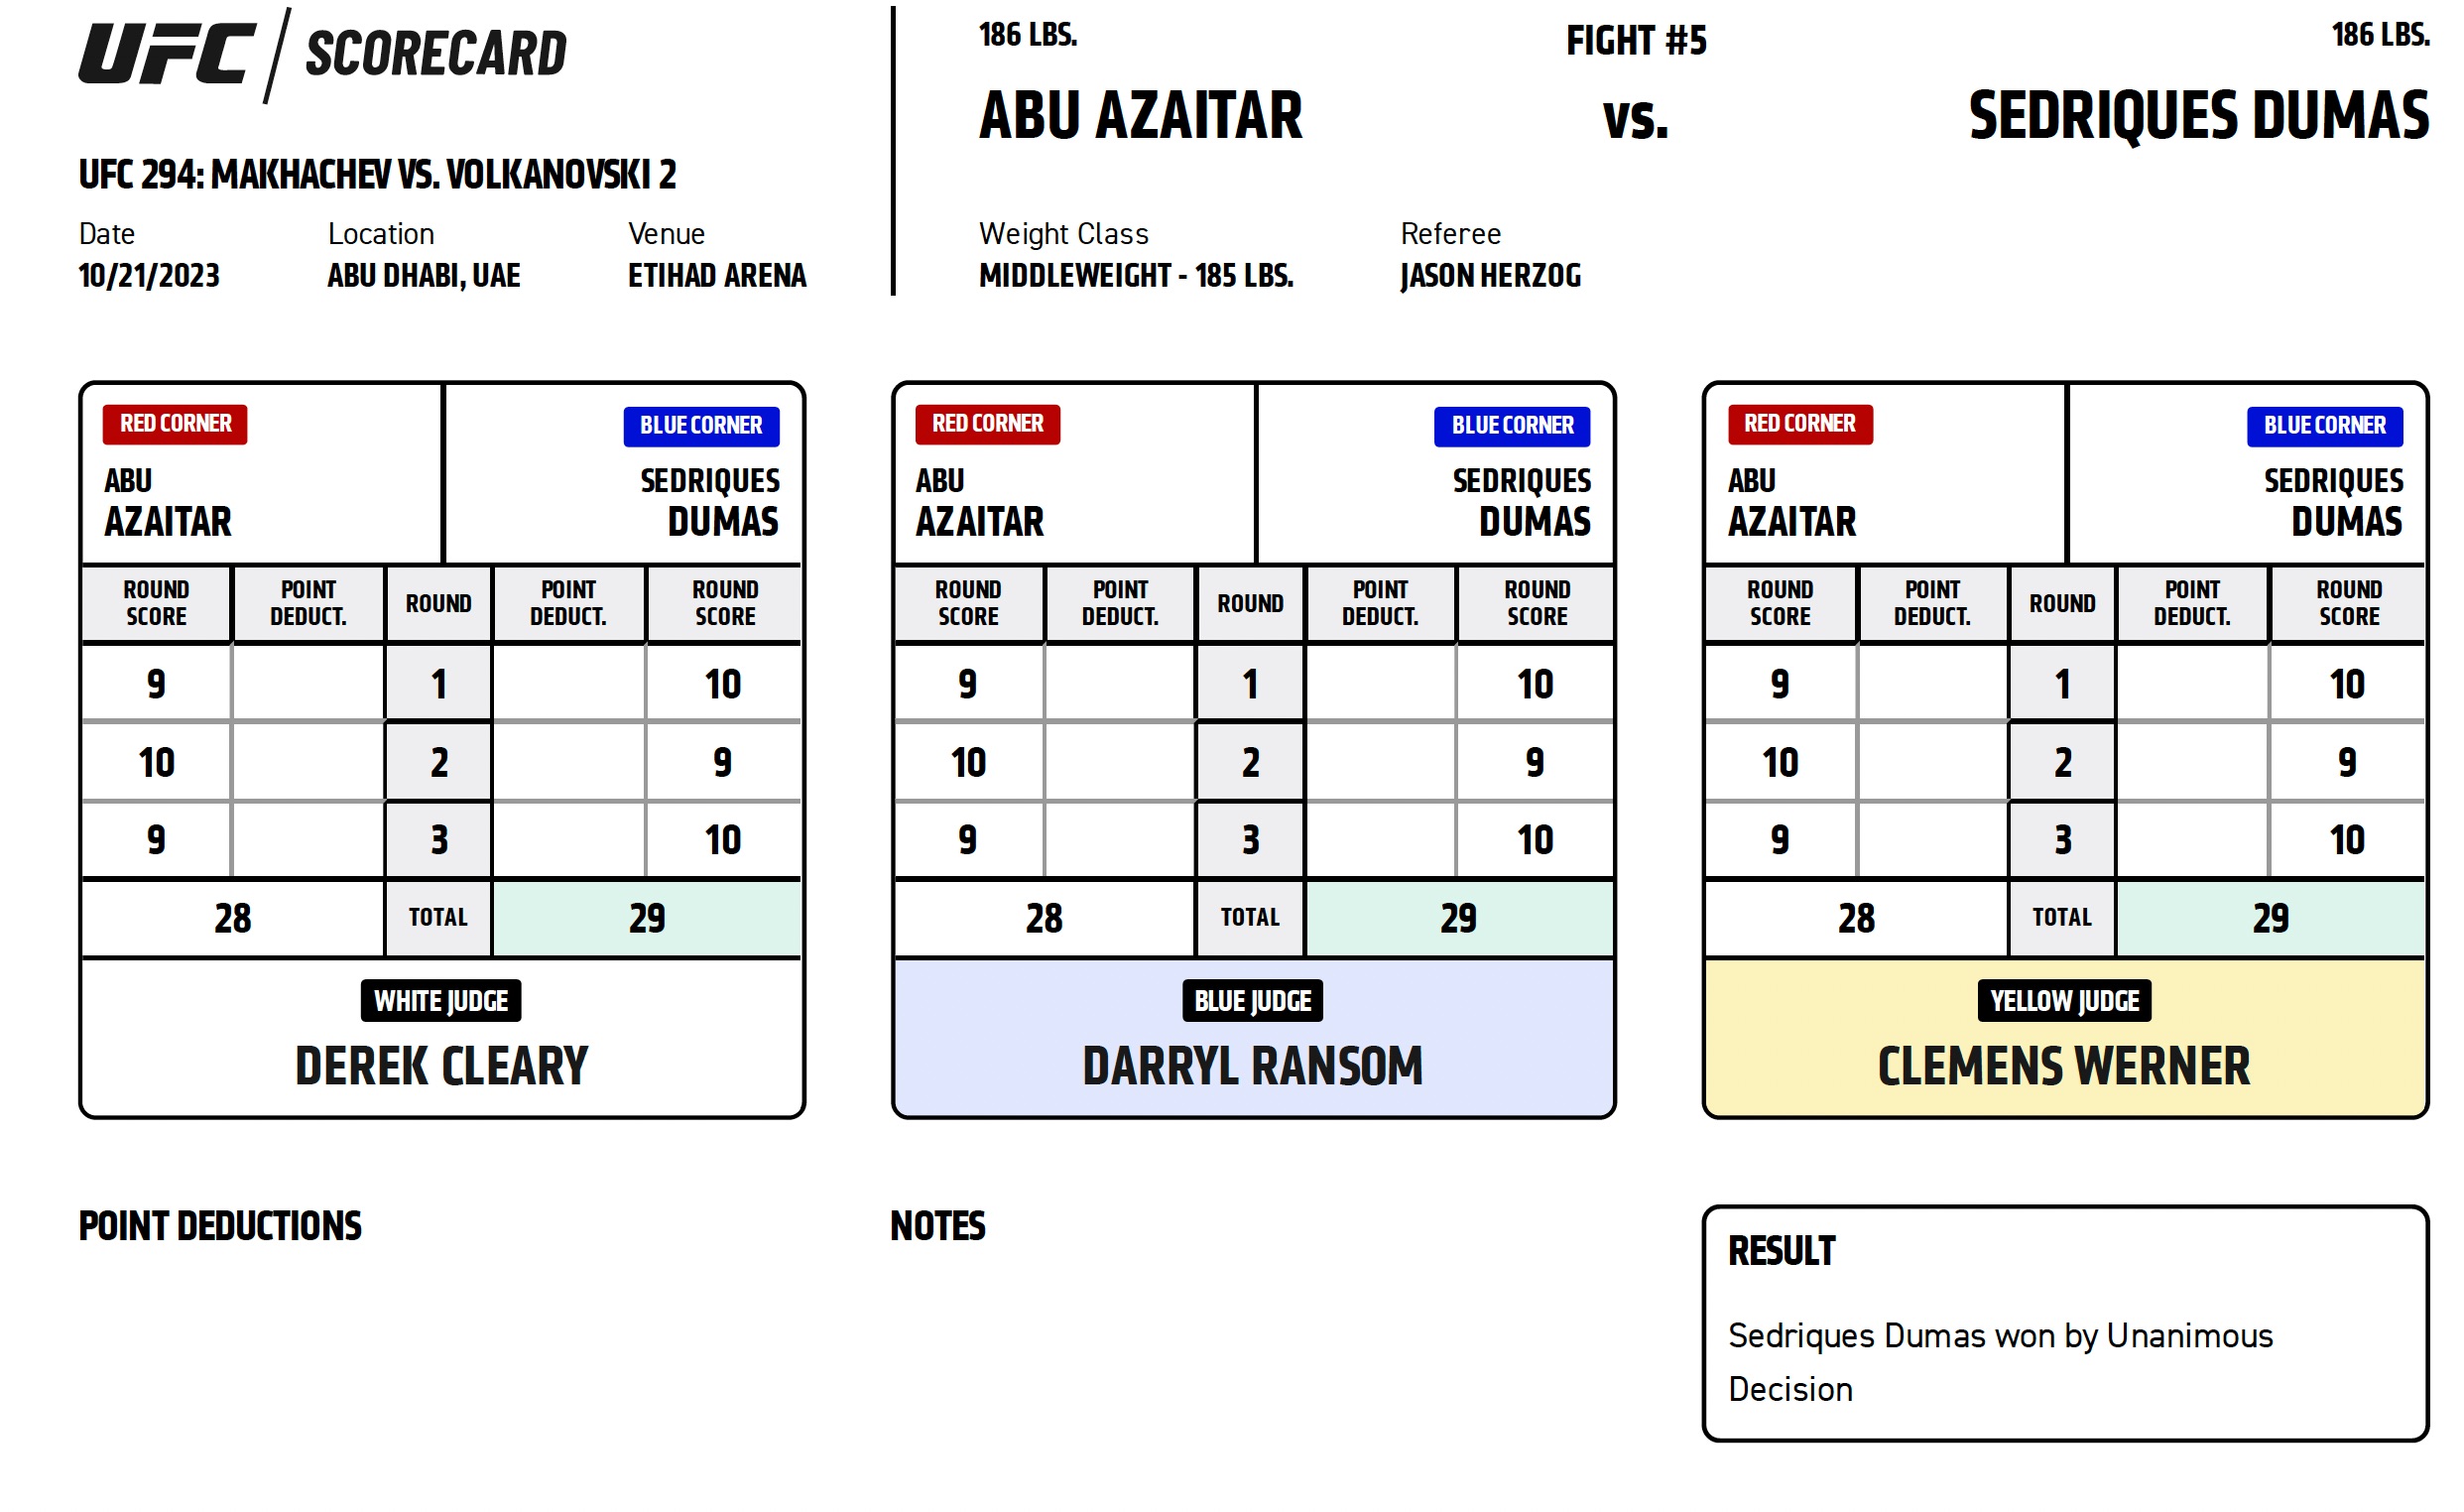 Scorecard : Combat Categorie - Poids Moyens : Sedriques Dumas vs. Abu Azaitar - UFC 294 - MAKHACHEV VS. VOLKANOVSKI 2